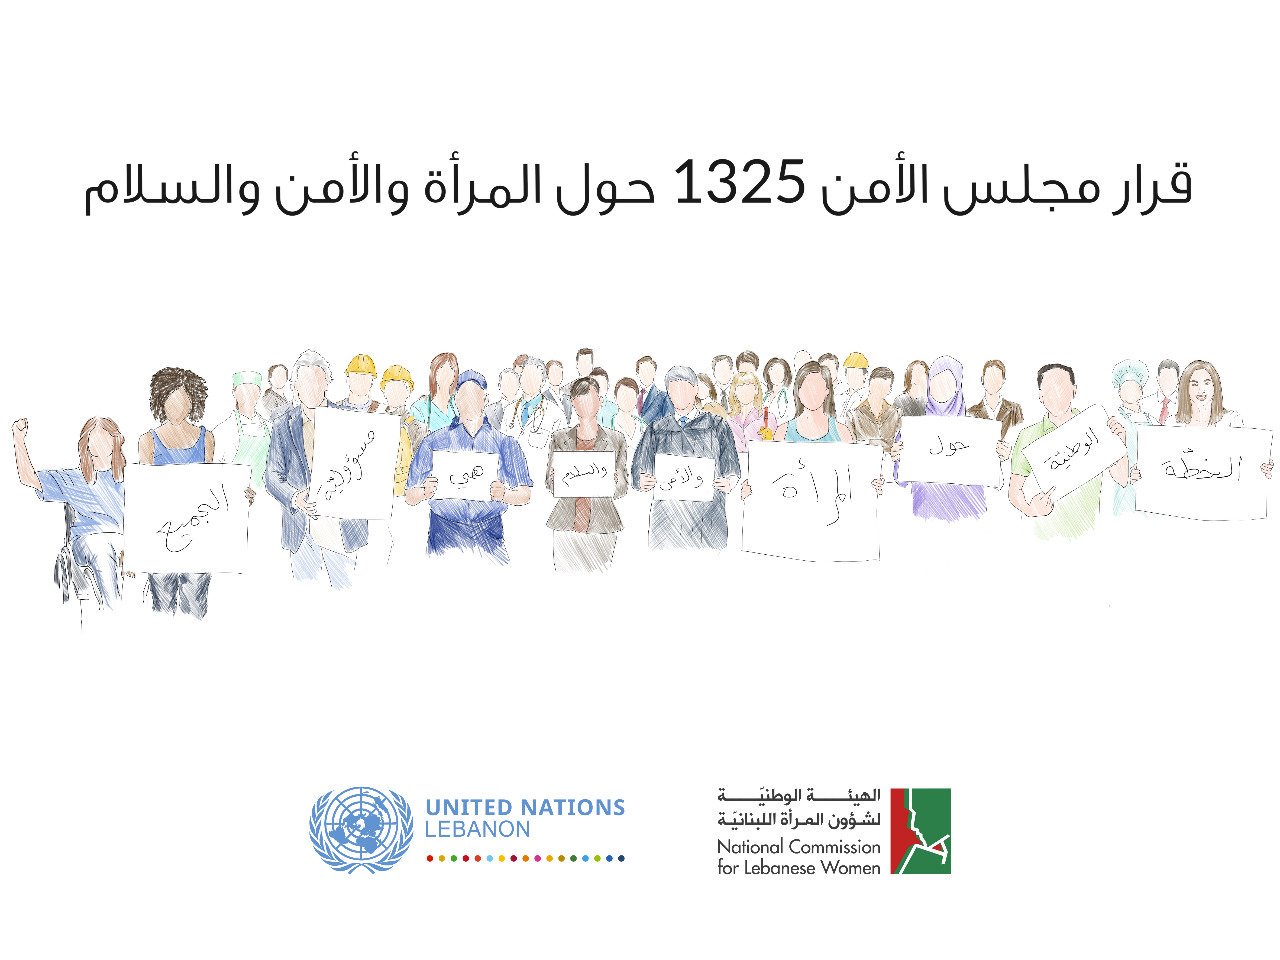 الحكومة اللبنانية تقرّ خطة العمل الوطنية الأولى الخاصة بلبنان لتطبيق قرار مجلس الأمن 1325 حول المرأة والسلام والأمن